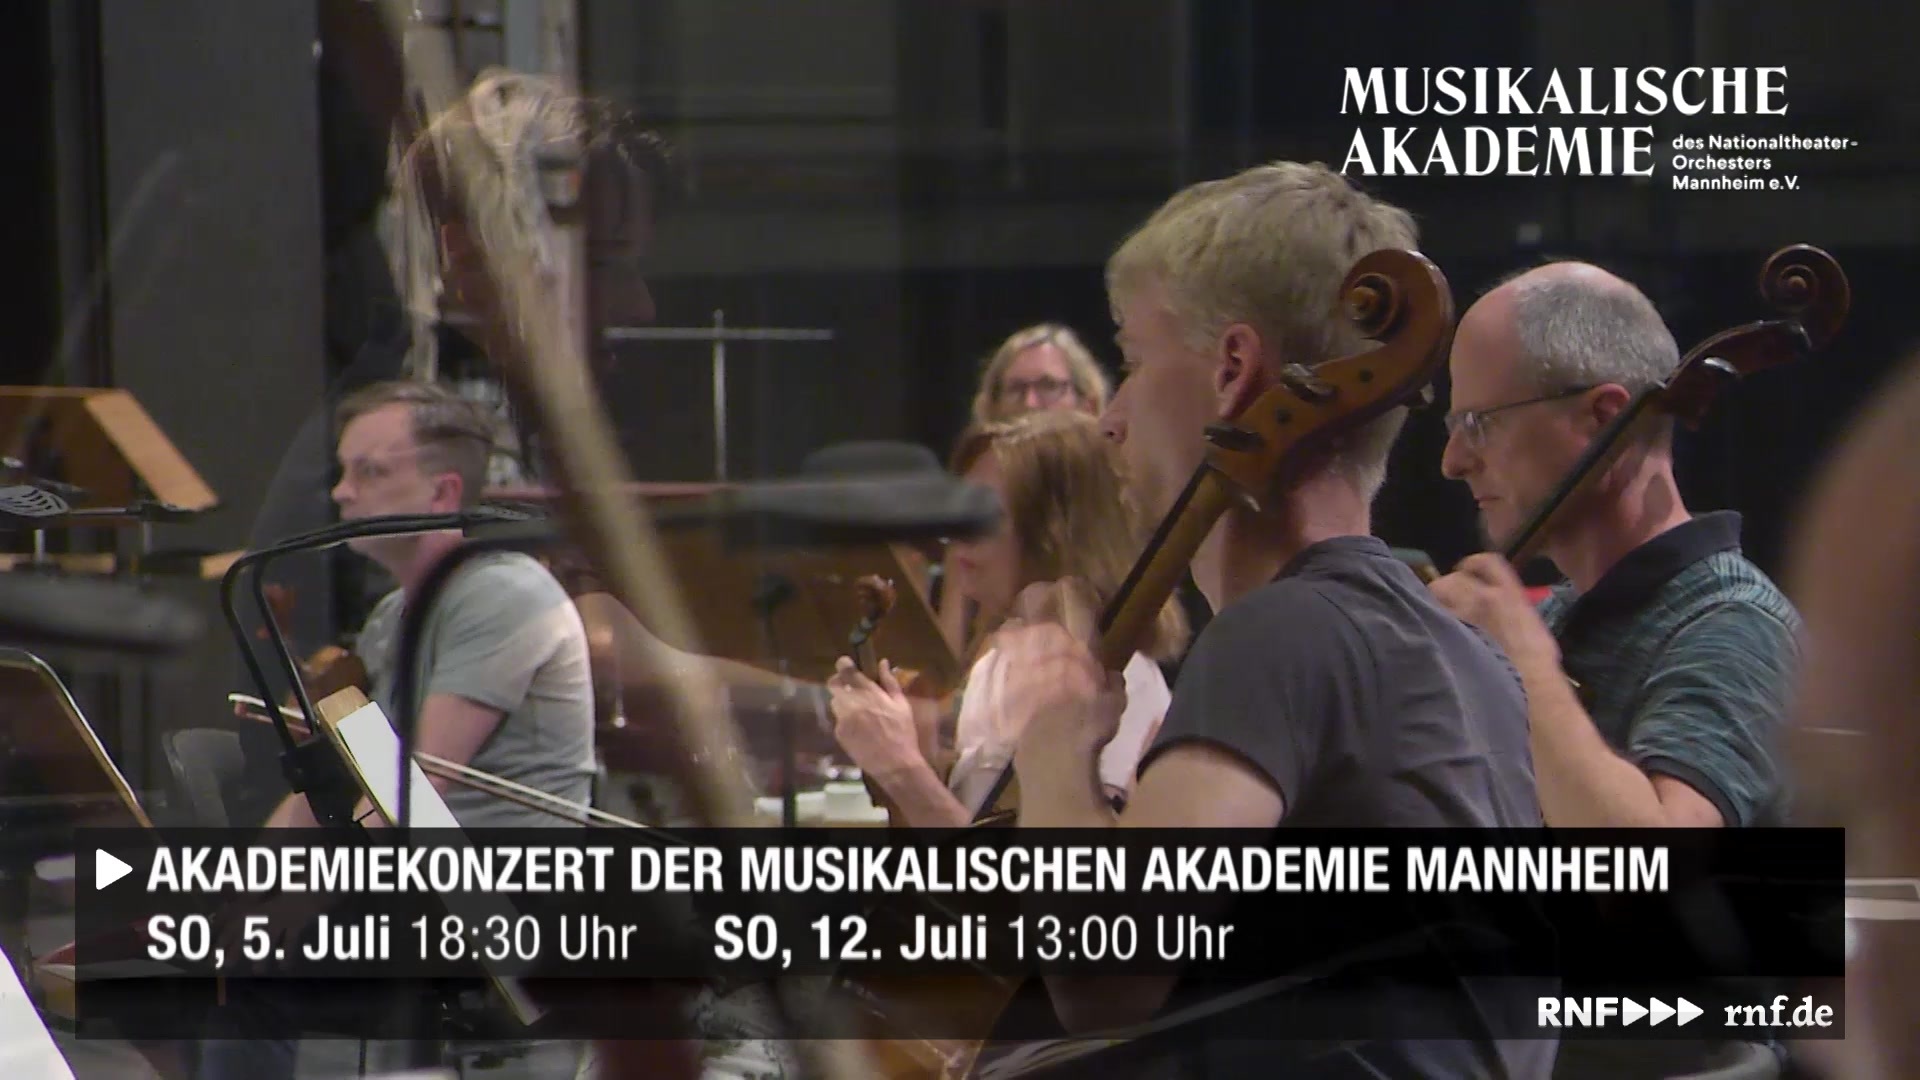 Promotion Spot Zum Akademiekonzert Der Musikalischen Akademie Mannheim Rhein Neckar Fernsehen